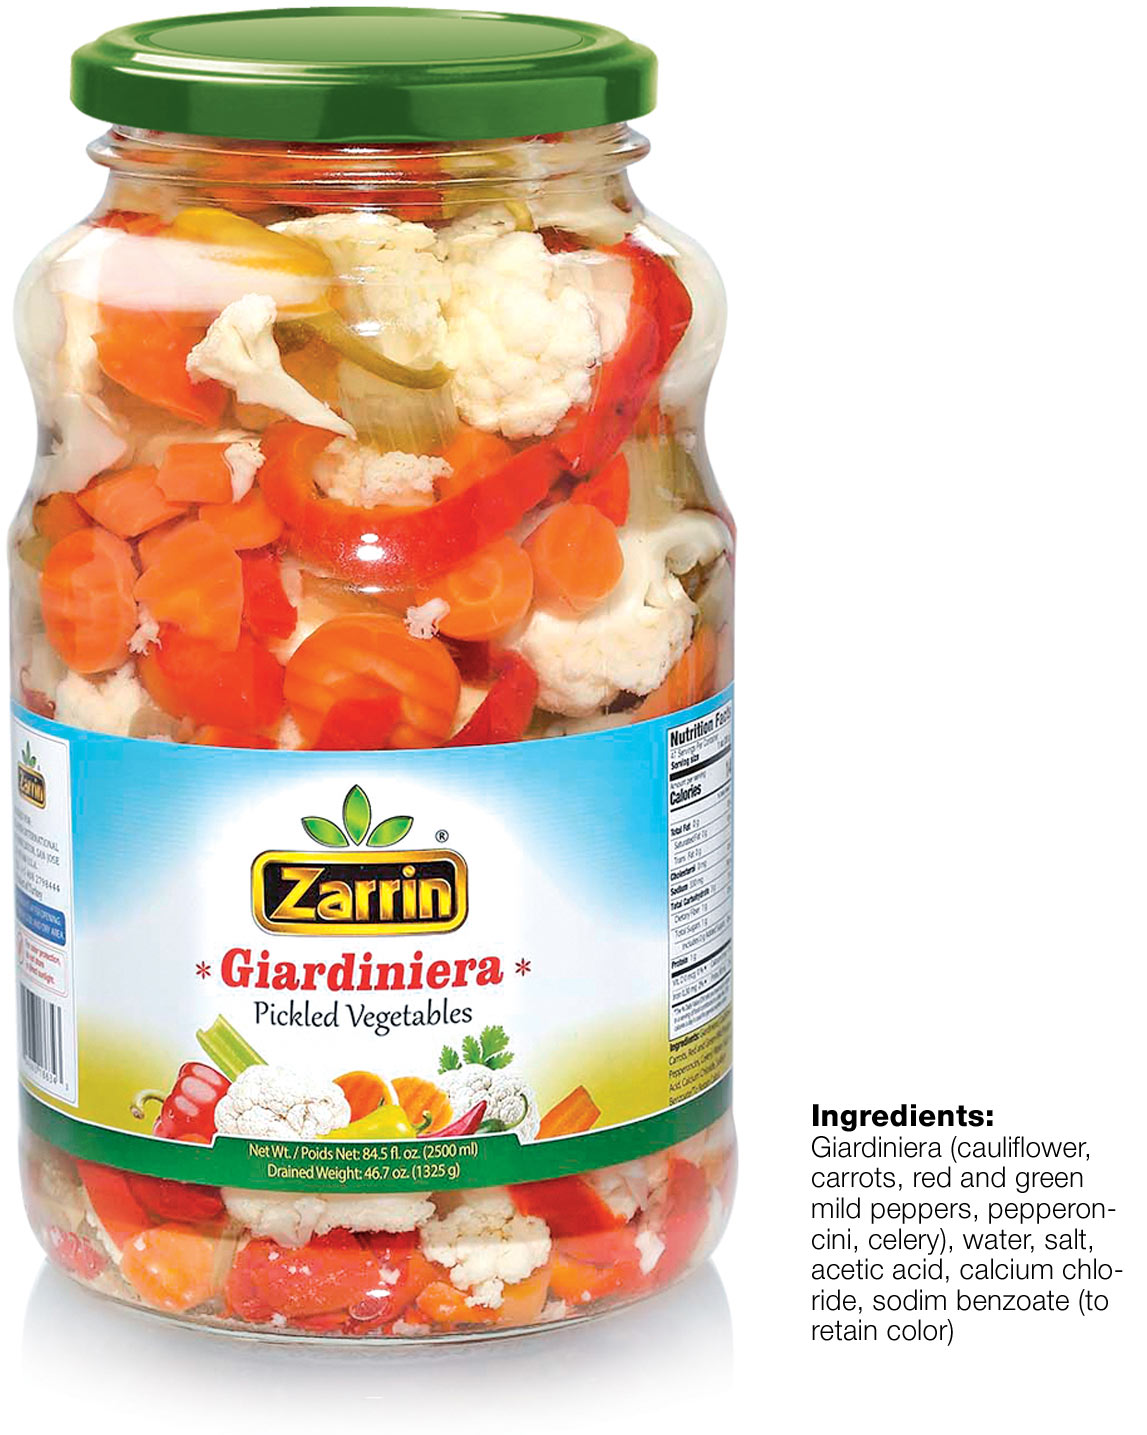 Zarrin giardiniera in 84.5 oz glass jar.